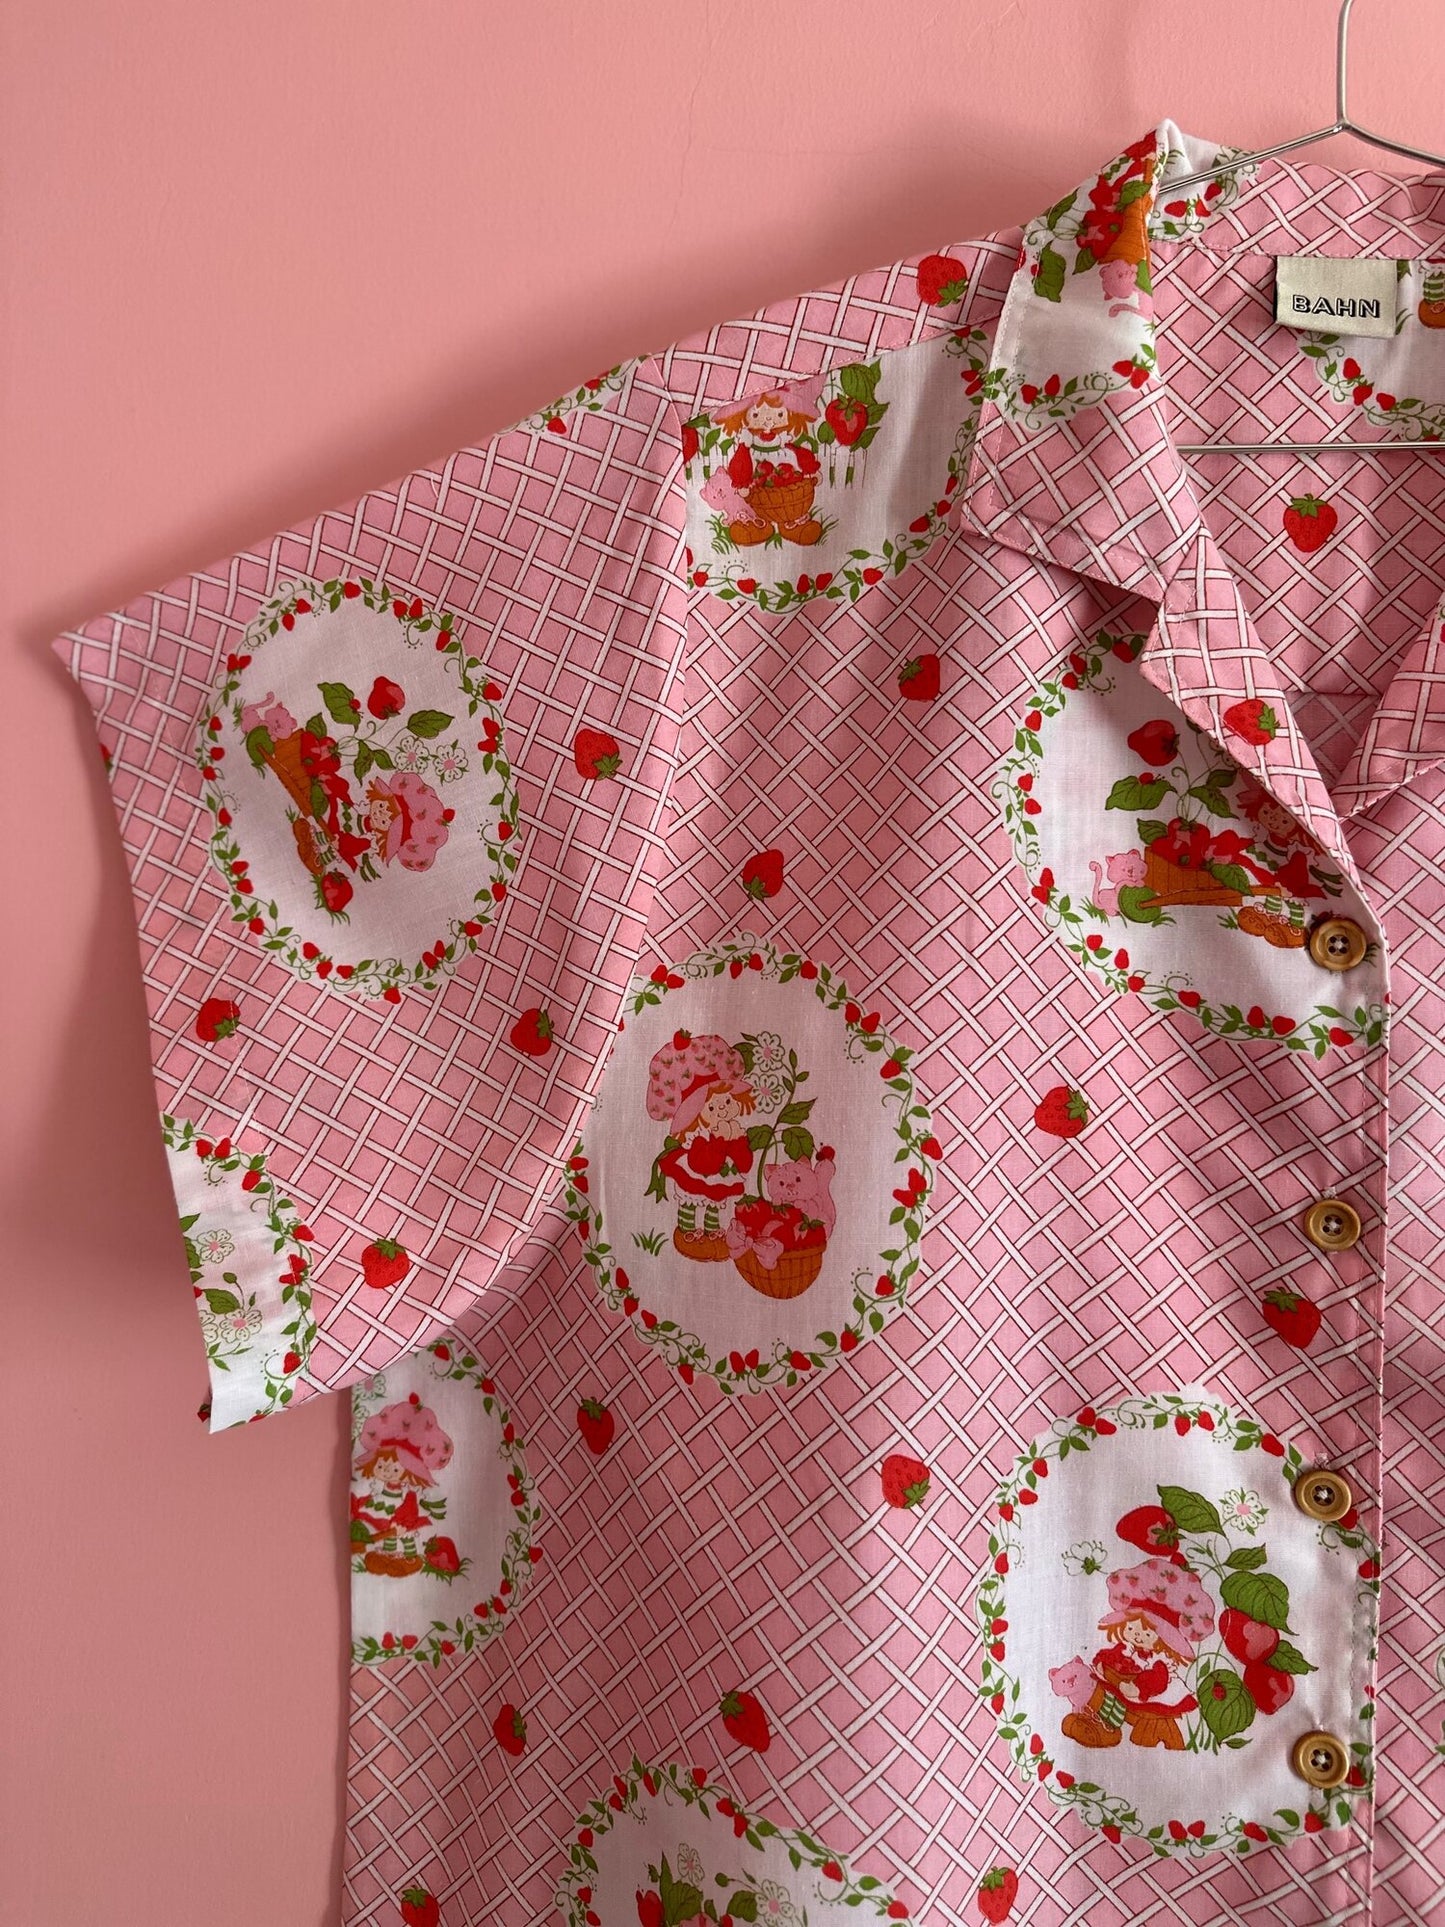 Eugene Strawberry Shortcake Vintage Camp Shirt w/ oversized sleeves - Sz OSP